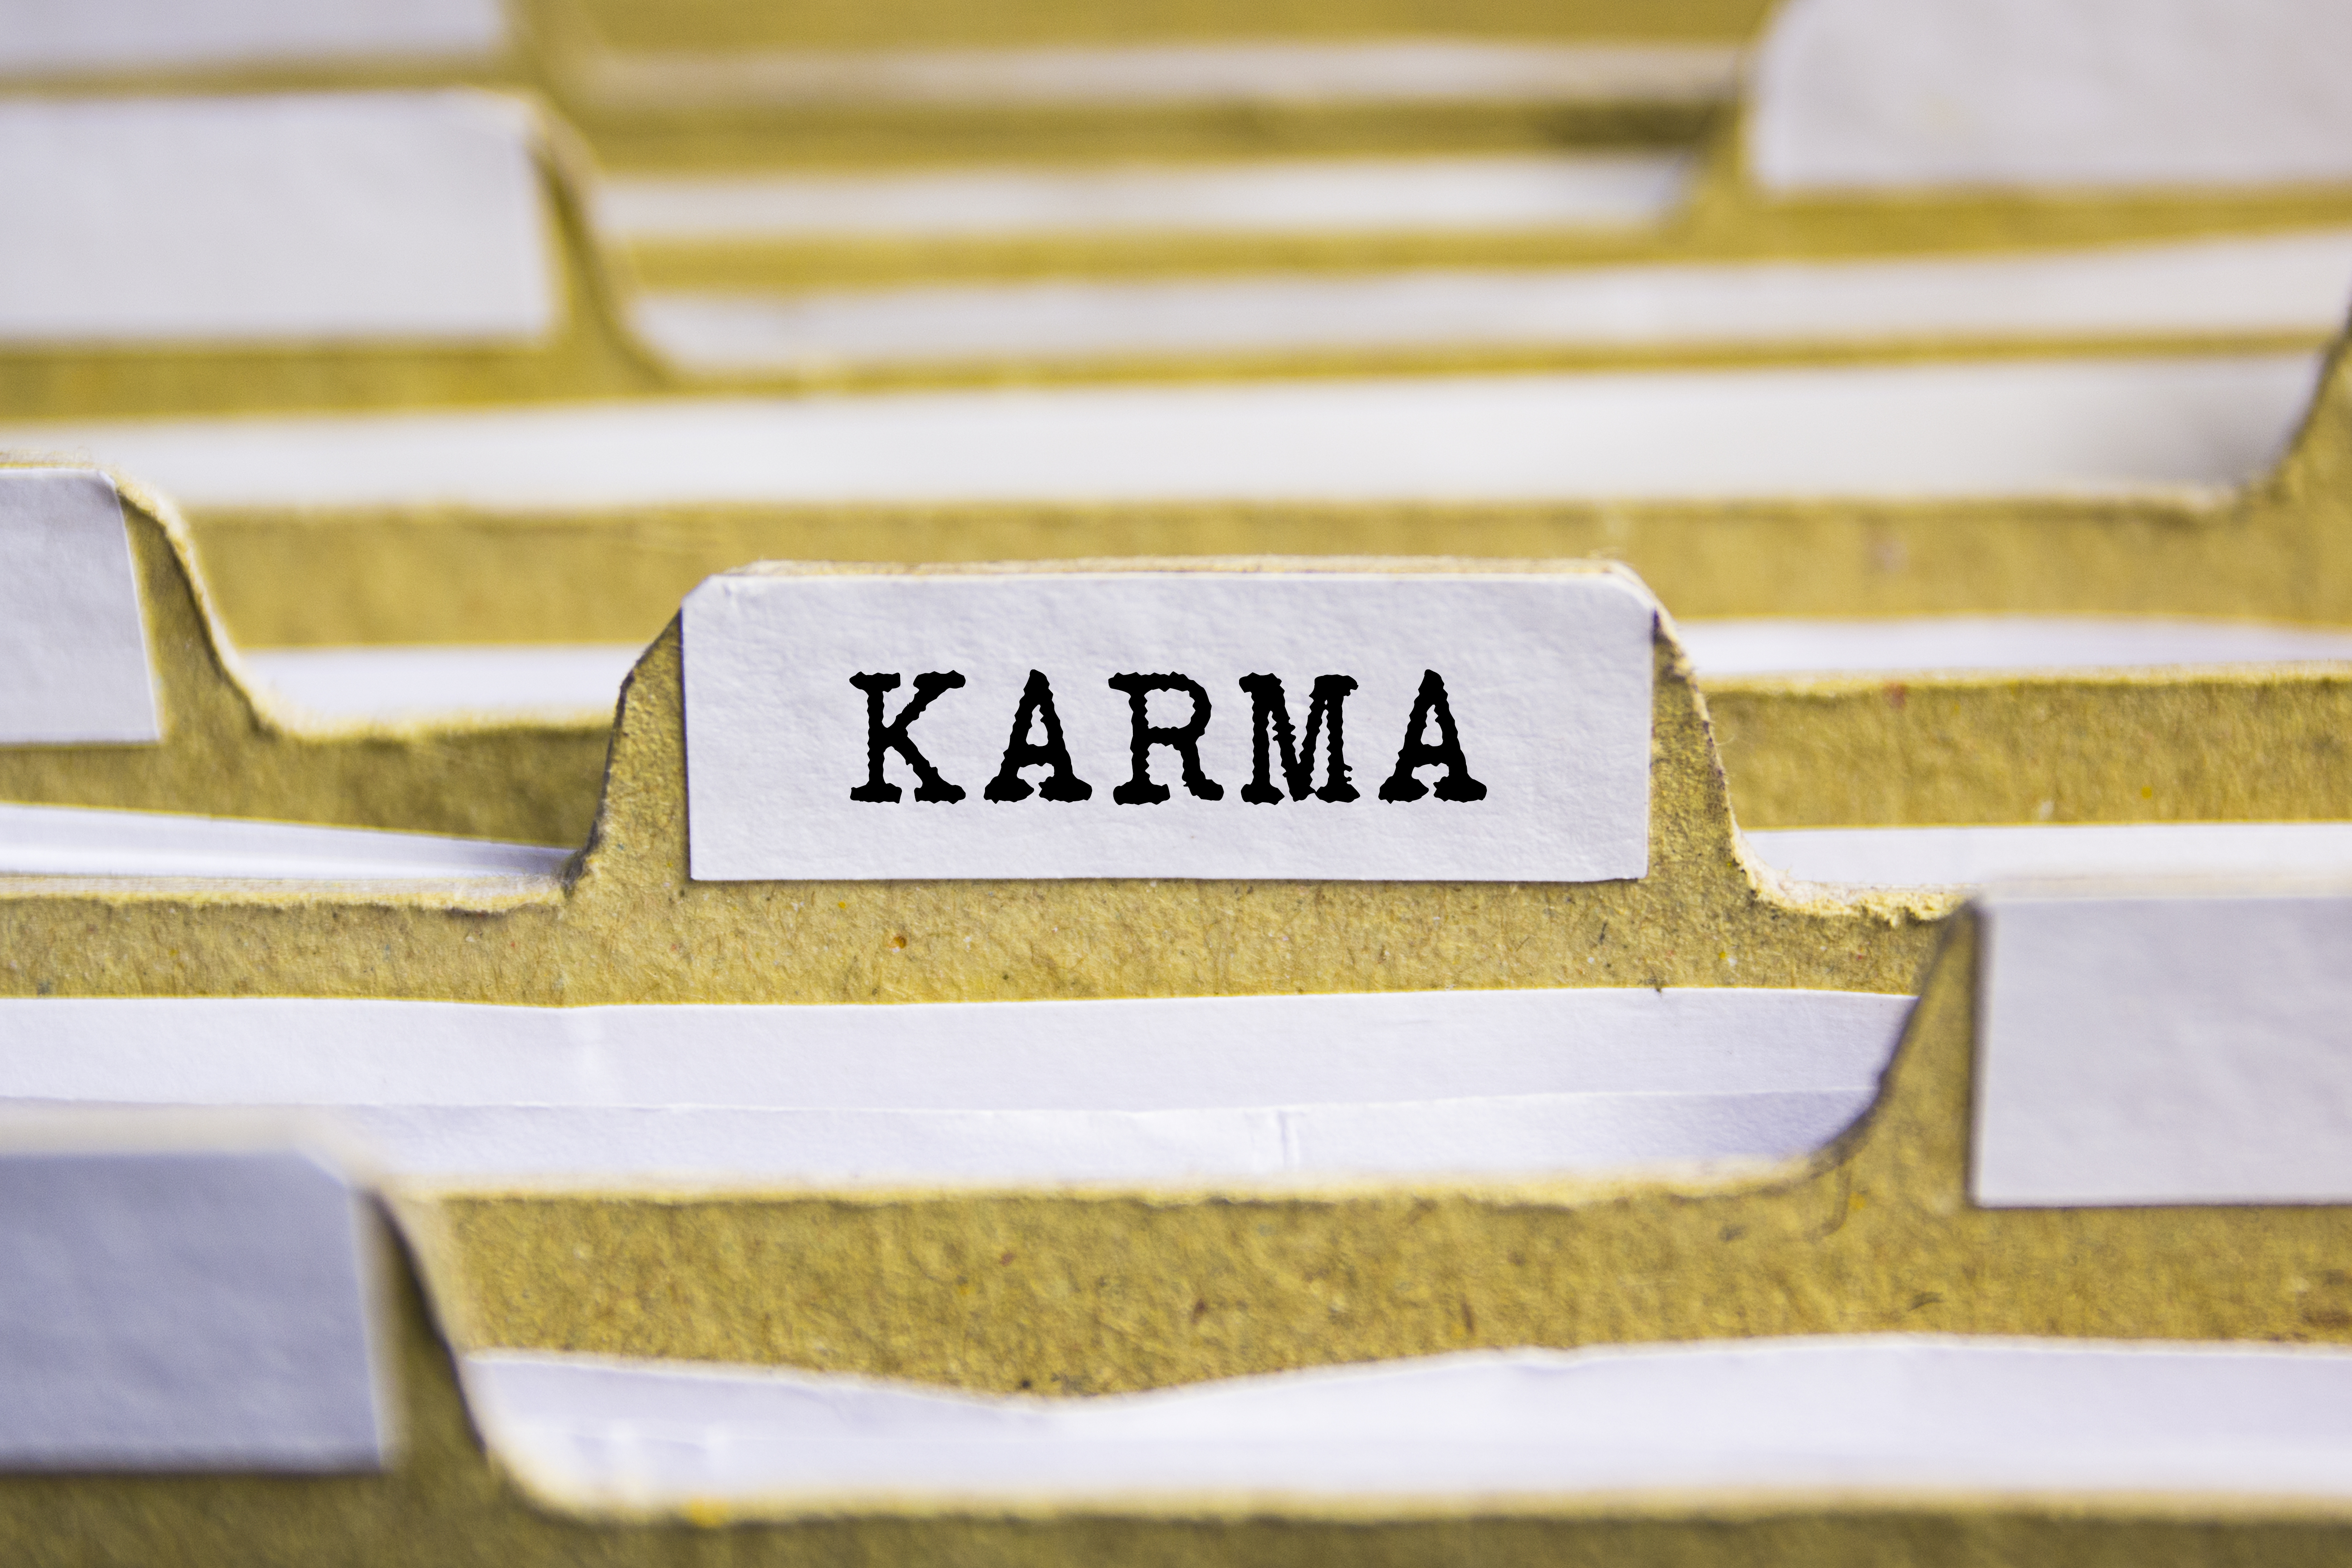 Le mot "karma" imprimé sur un fichier | Source : Shutterstock/Sinart Creative